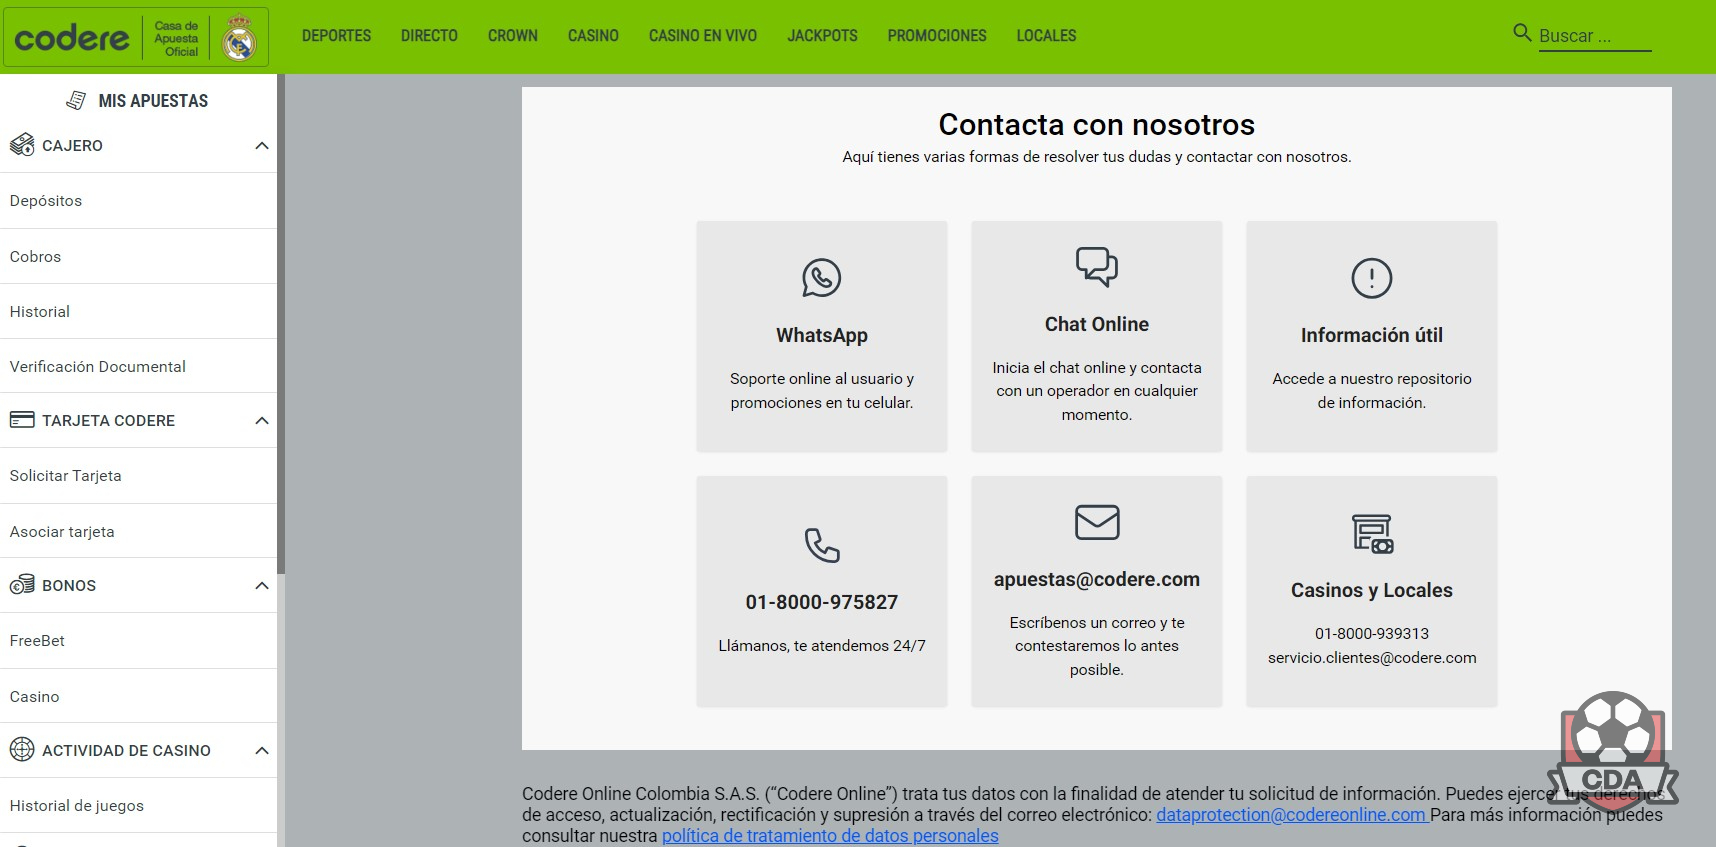 Codere Colombia: Atención al cliente